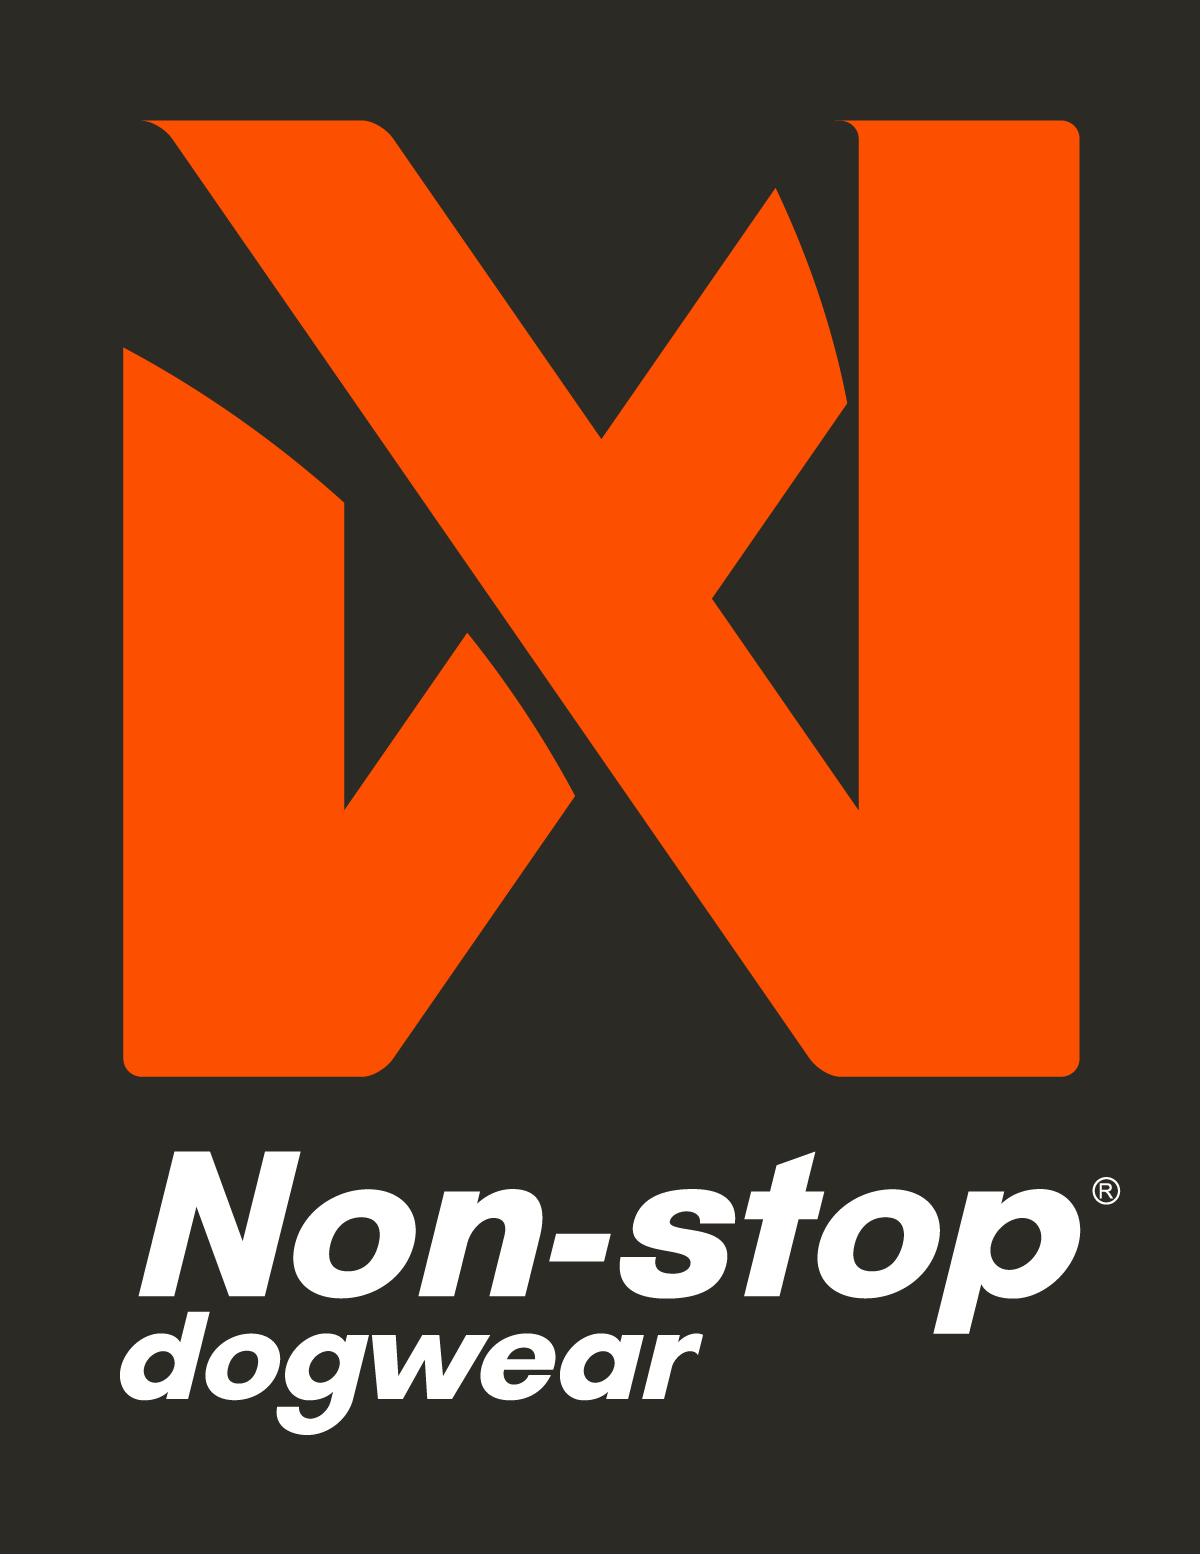 Non-stop dogwear AS